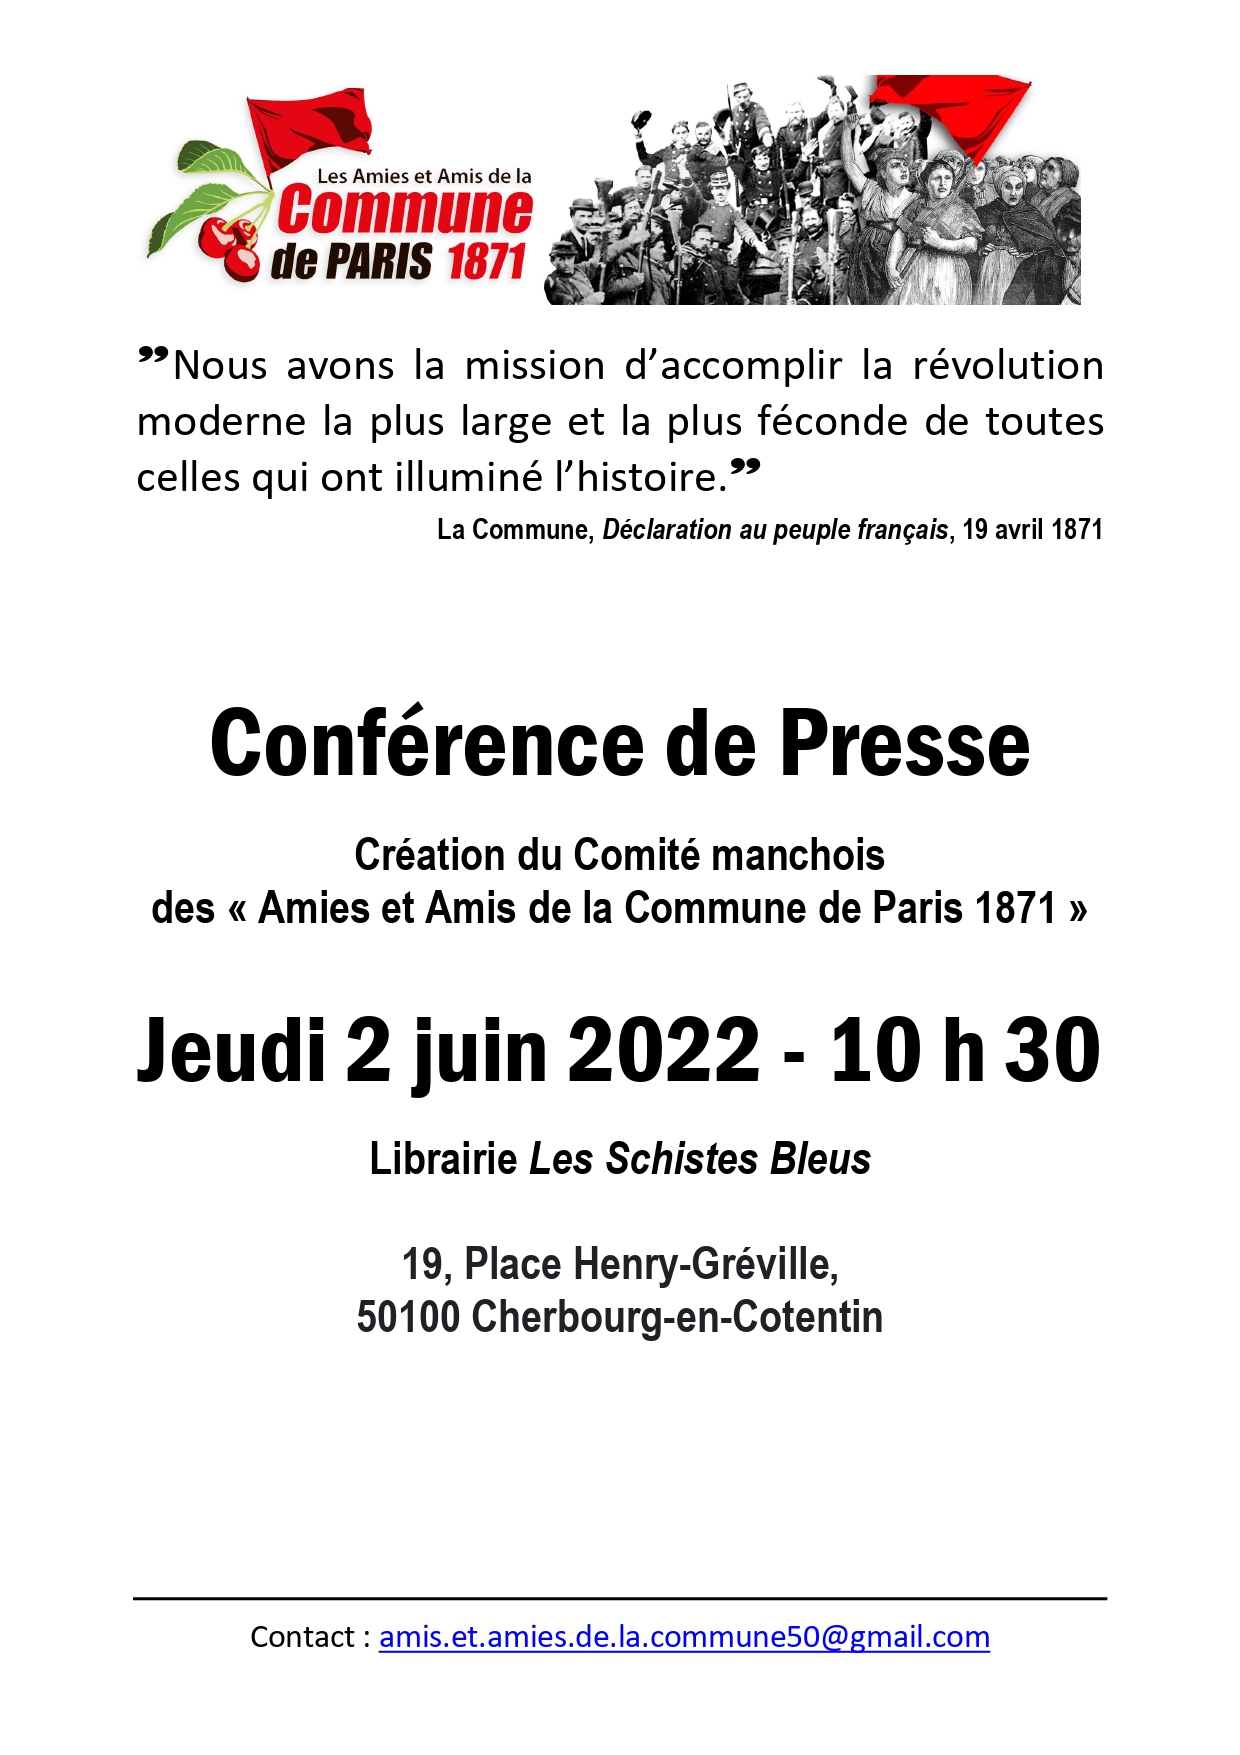 Affiche qui annonçait la crétaion du Comité manchois par une conférence de presse du 2 juin 2022